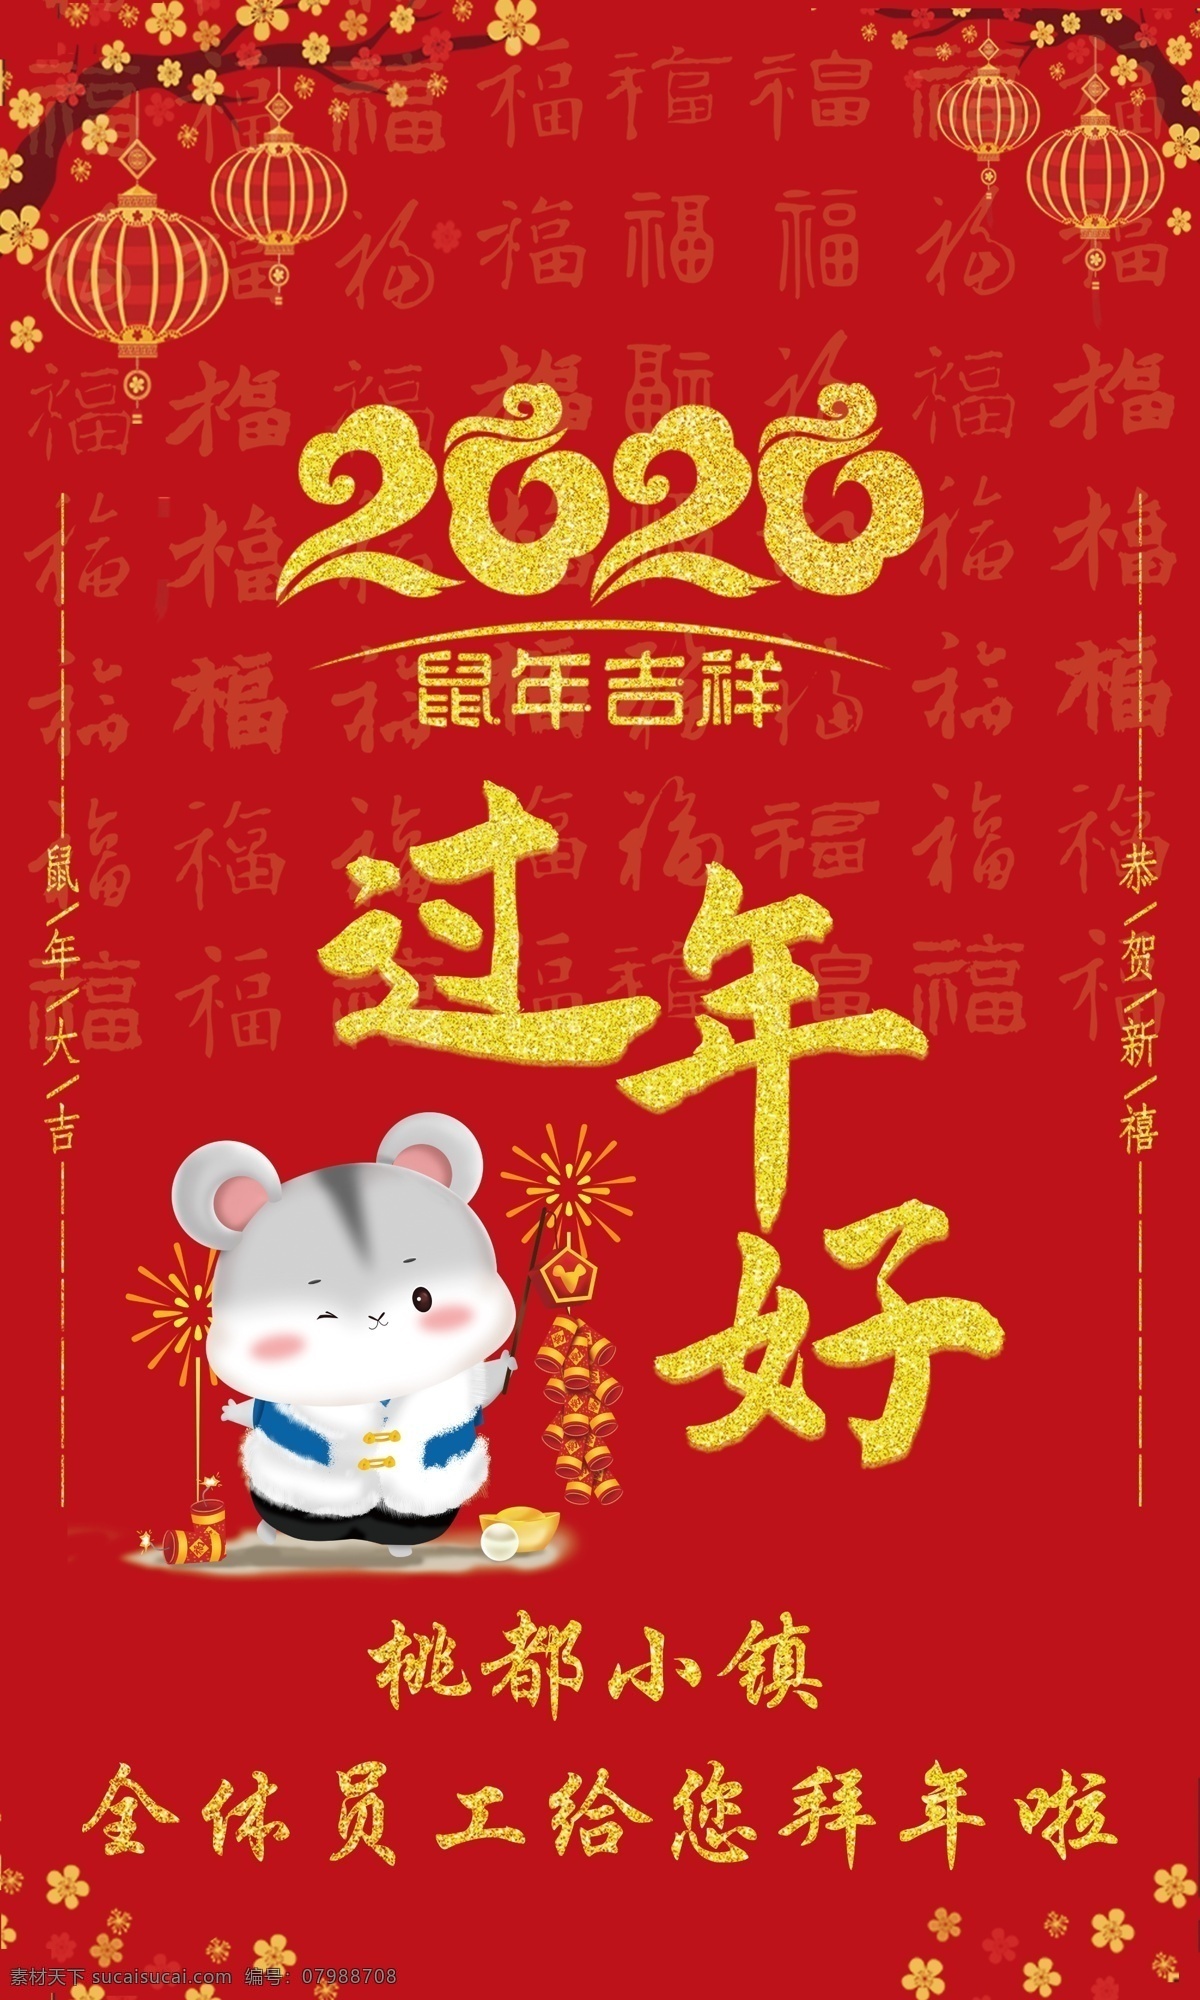 过年好 过年啦 鼠年大吉 新年快乐 新年海报 过年海报 2020年 老鼠 灯笼 梅花 红色背景 海报